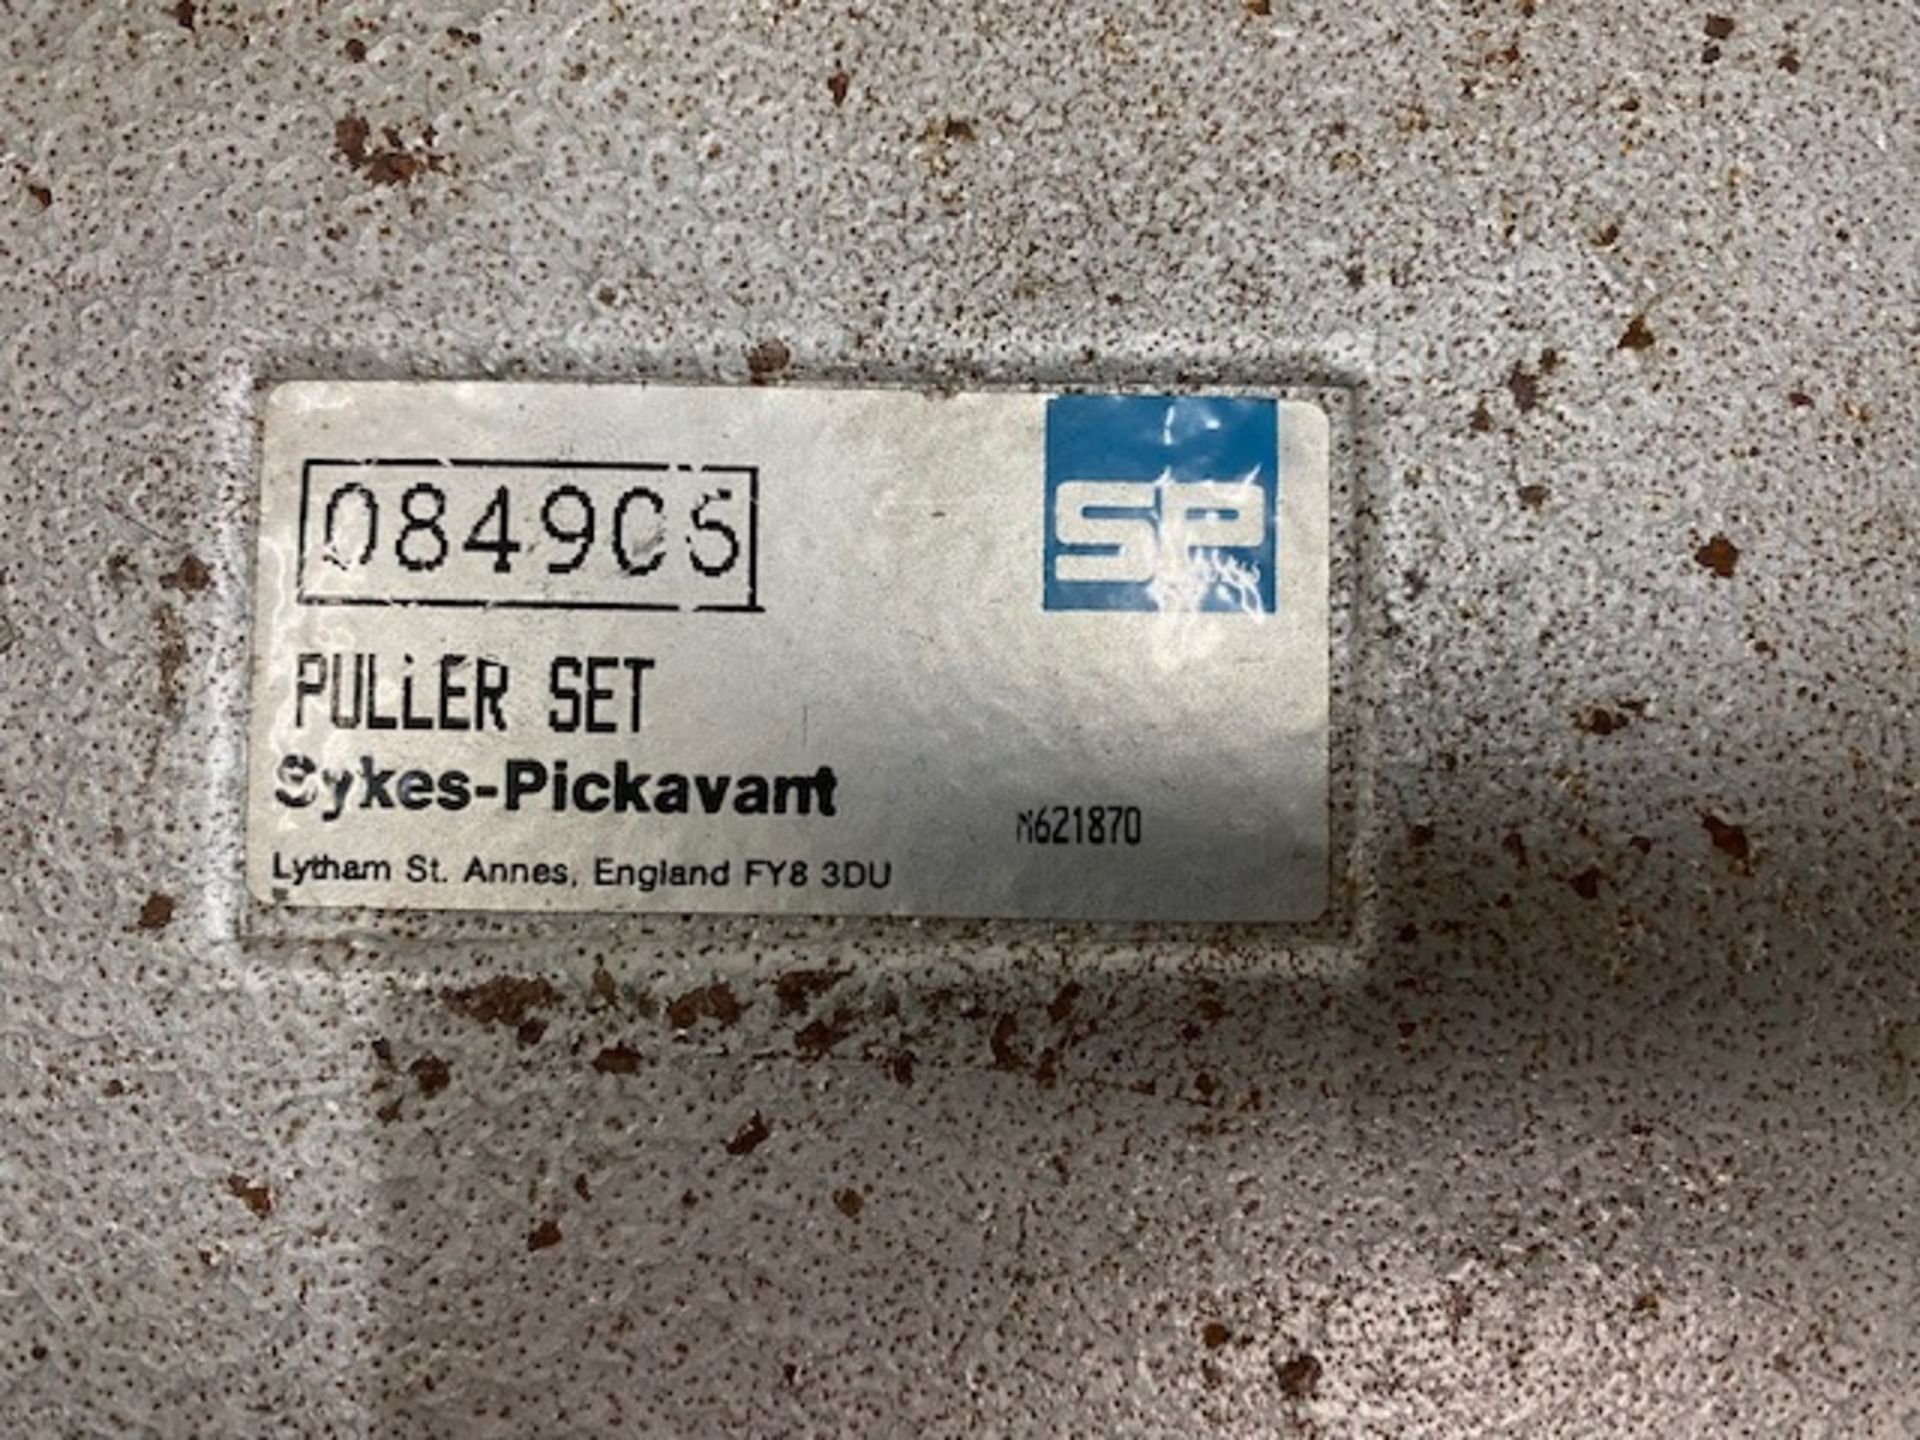 Sykes Pickavant puller set S/N 084906 (Located Upminster) - Image 2 of 4